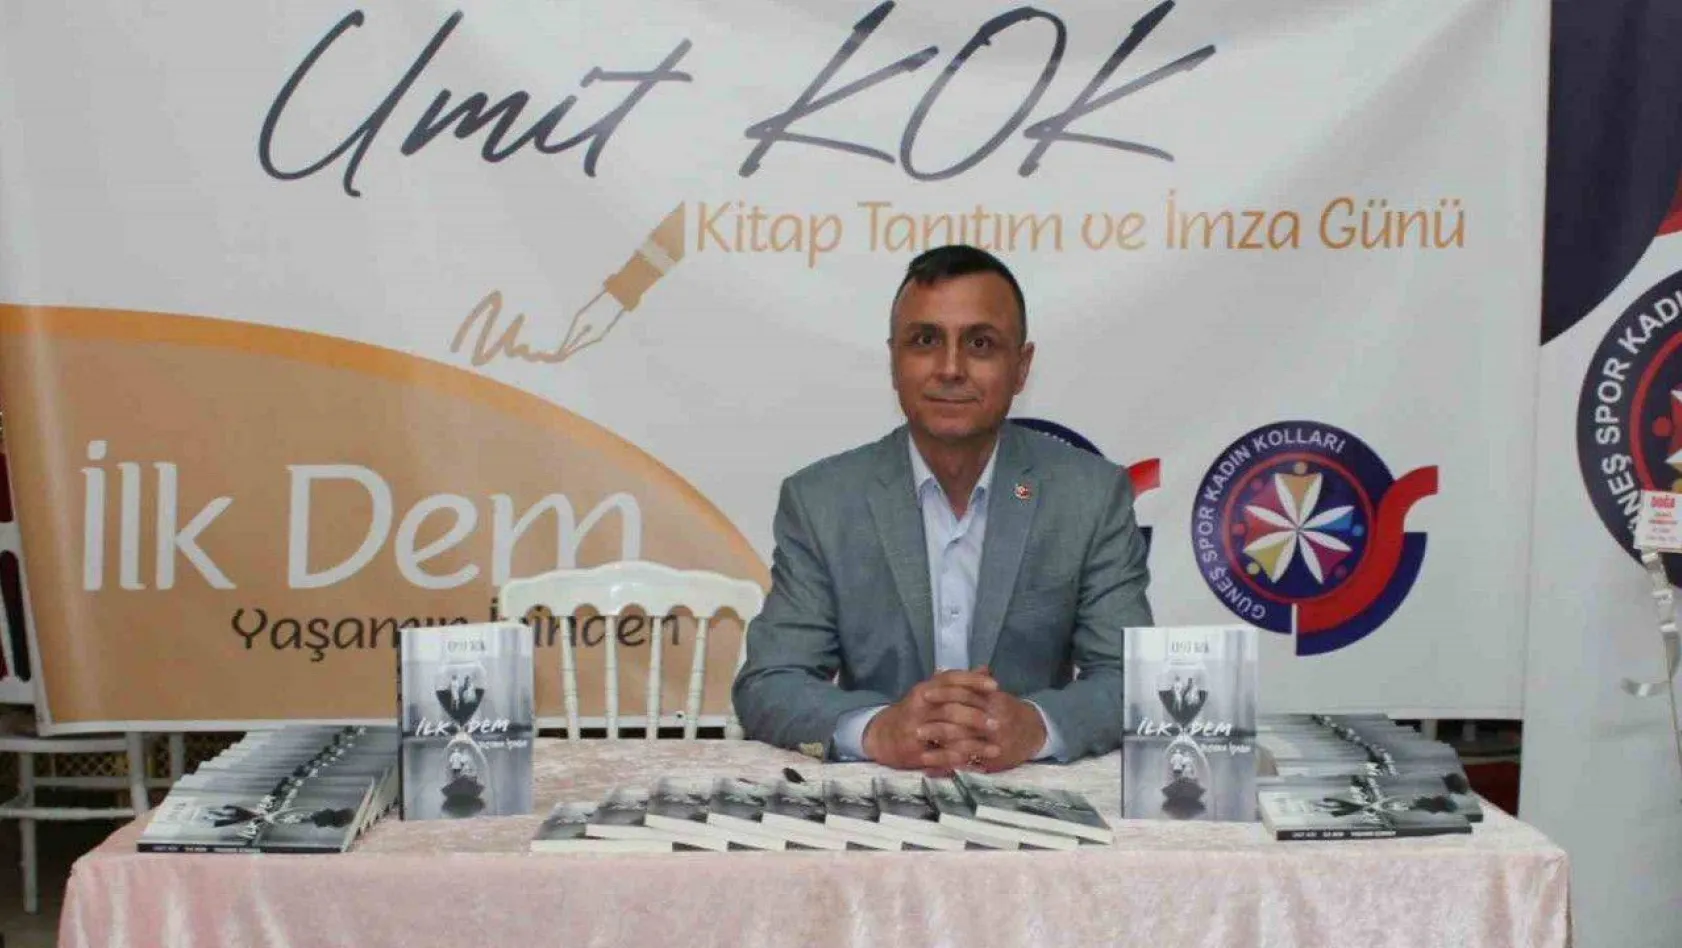 Güneşspor Kulüp Başkanı Ümit Kök'ün 'İlk Dem' isimli şiir kitabı okuyucular ile buluştu